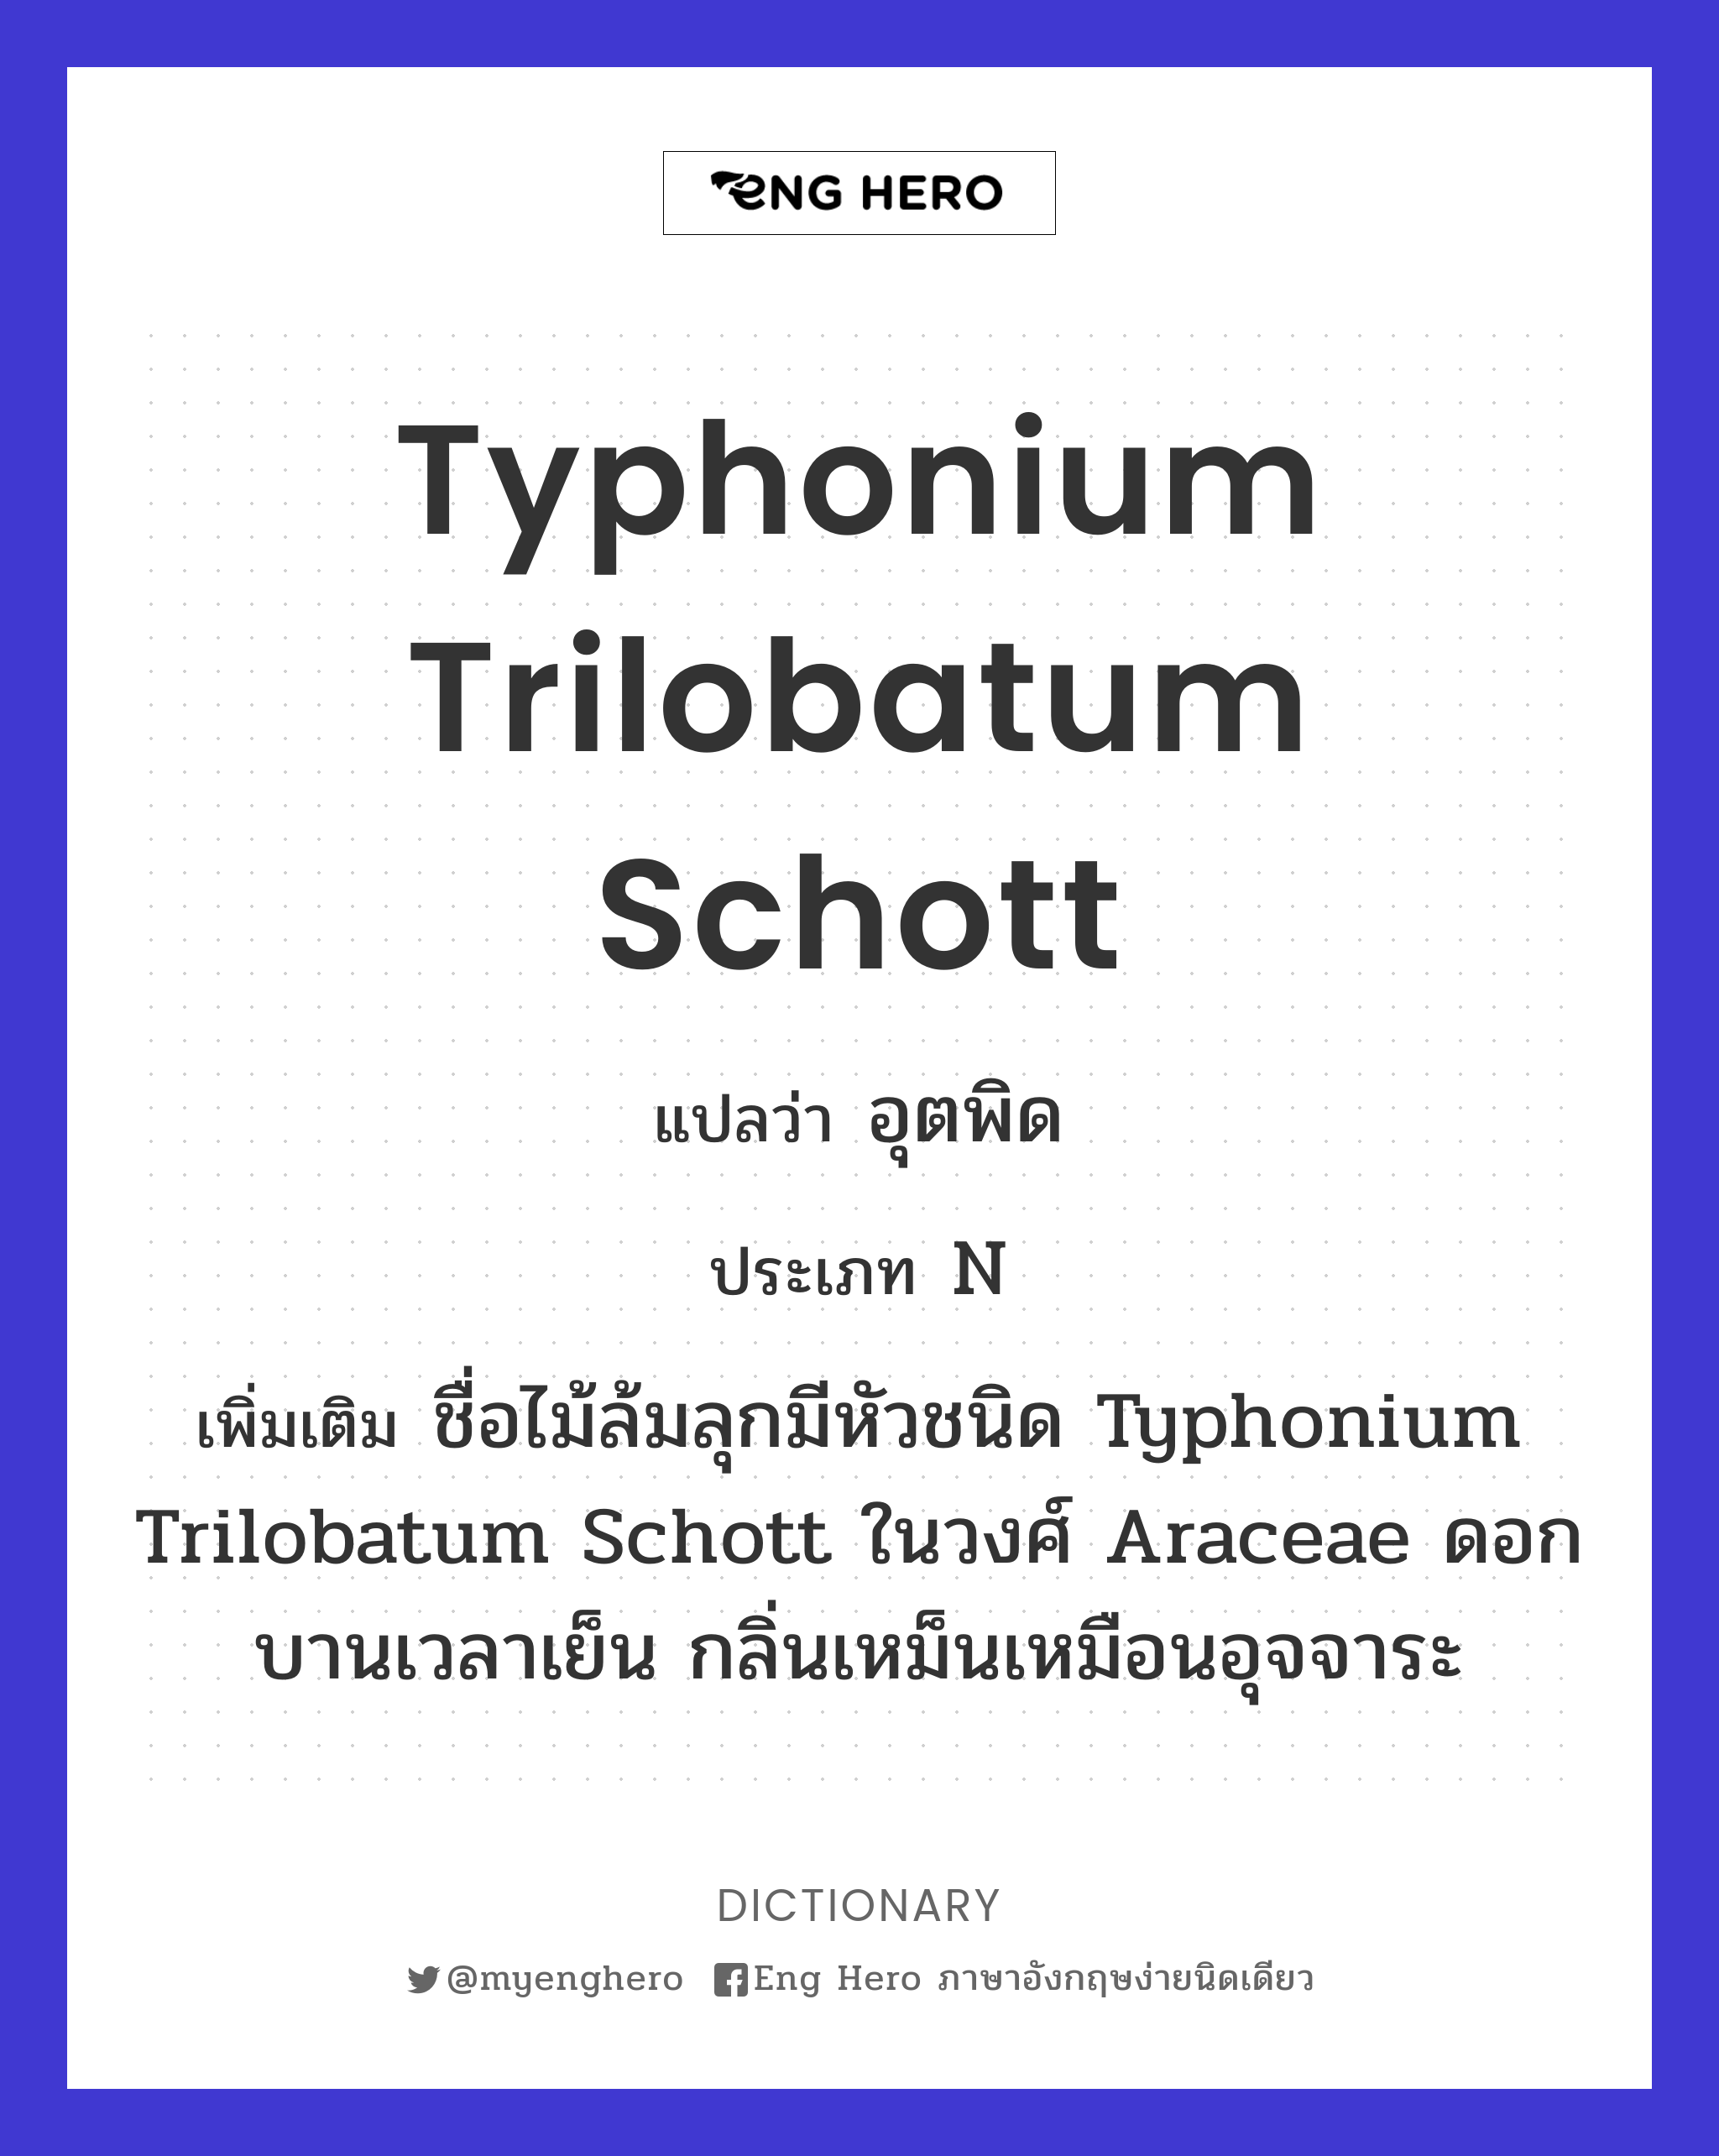 Typhonium trilobatum Schott